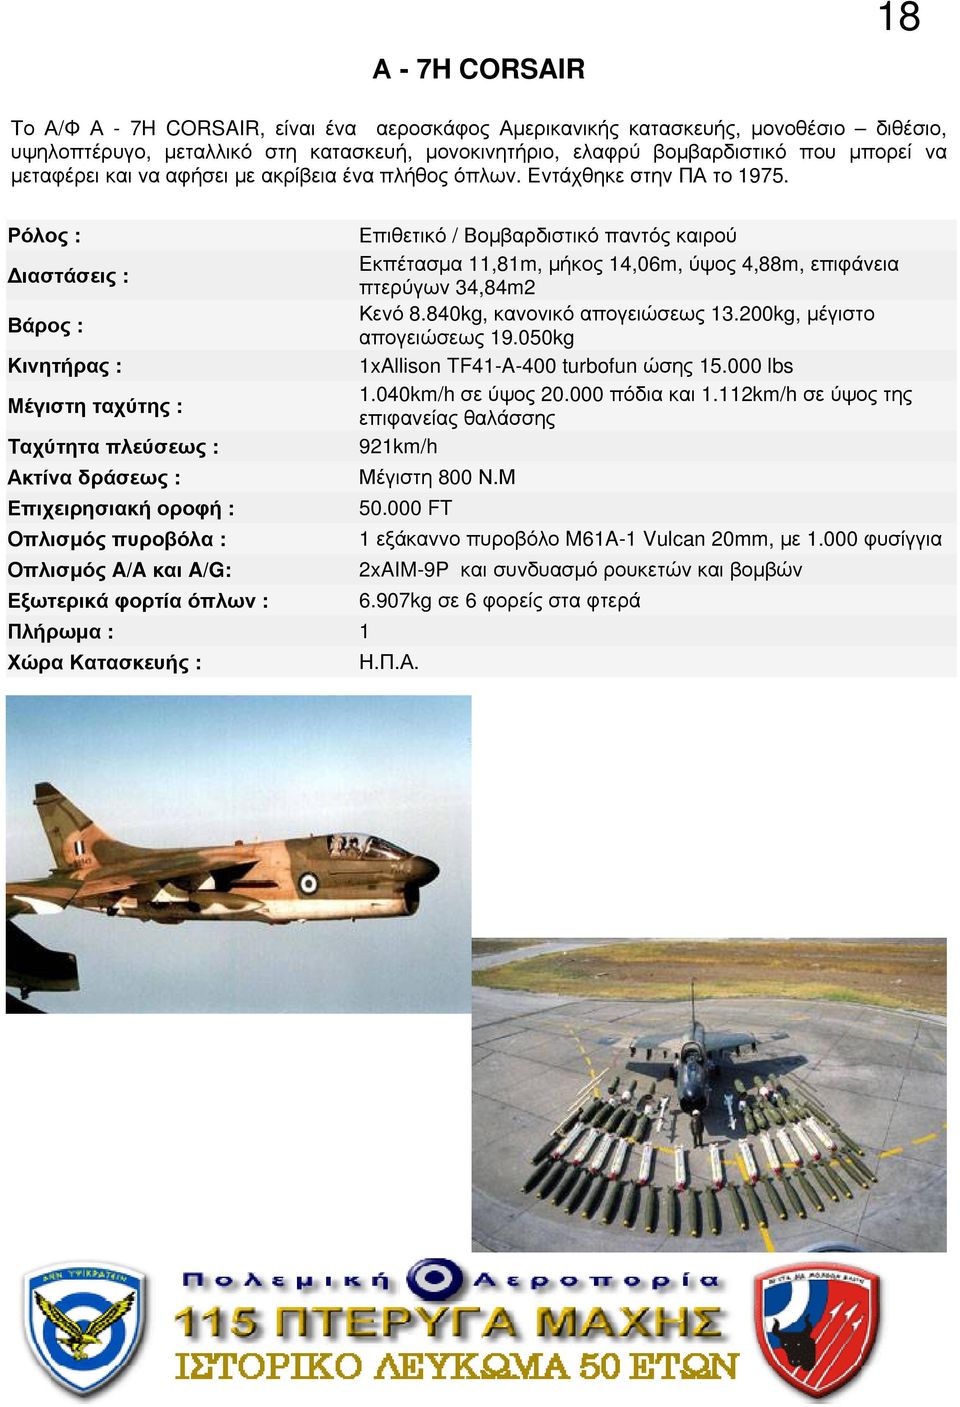 Ρόλος : Επιθετικό / Βομβαρδιστικό παντός καιρού ιαστάσεις : Εκπέτασμα 11,81m, μήκος 14,06m, ύψος 4,88m, επιφάνεια πτερύγων 34,84m2 Βάρος : Κενό 8.840kg, κανονικό απογειώσεως 13.